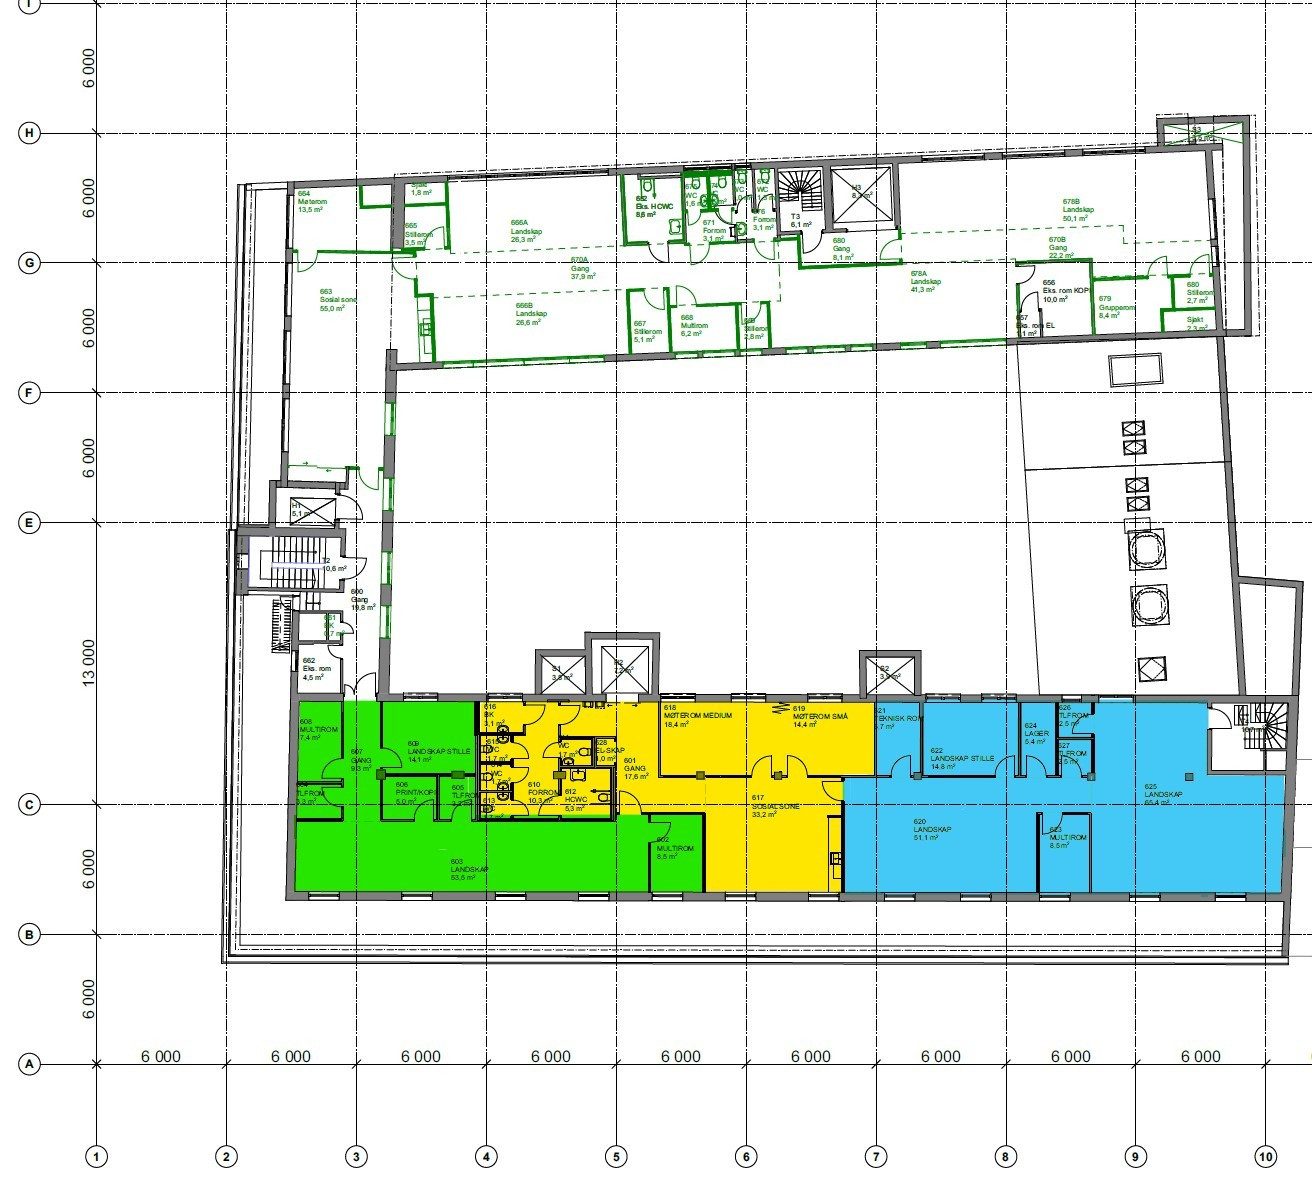 Plantegning 6. etg. Mulig å dele det ledige lokalet. Grønt areal del 1, BTA 240 m². Blått areal del 2, BTA 357 m².